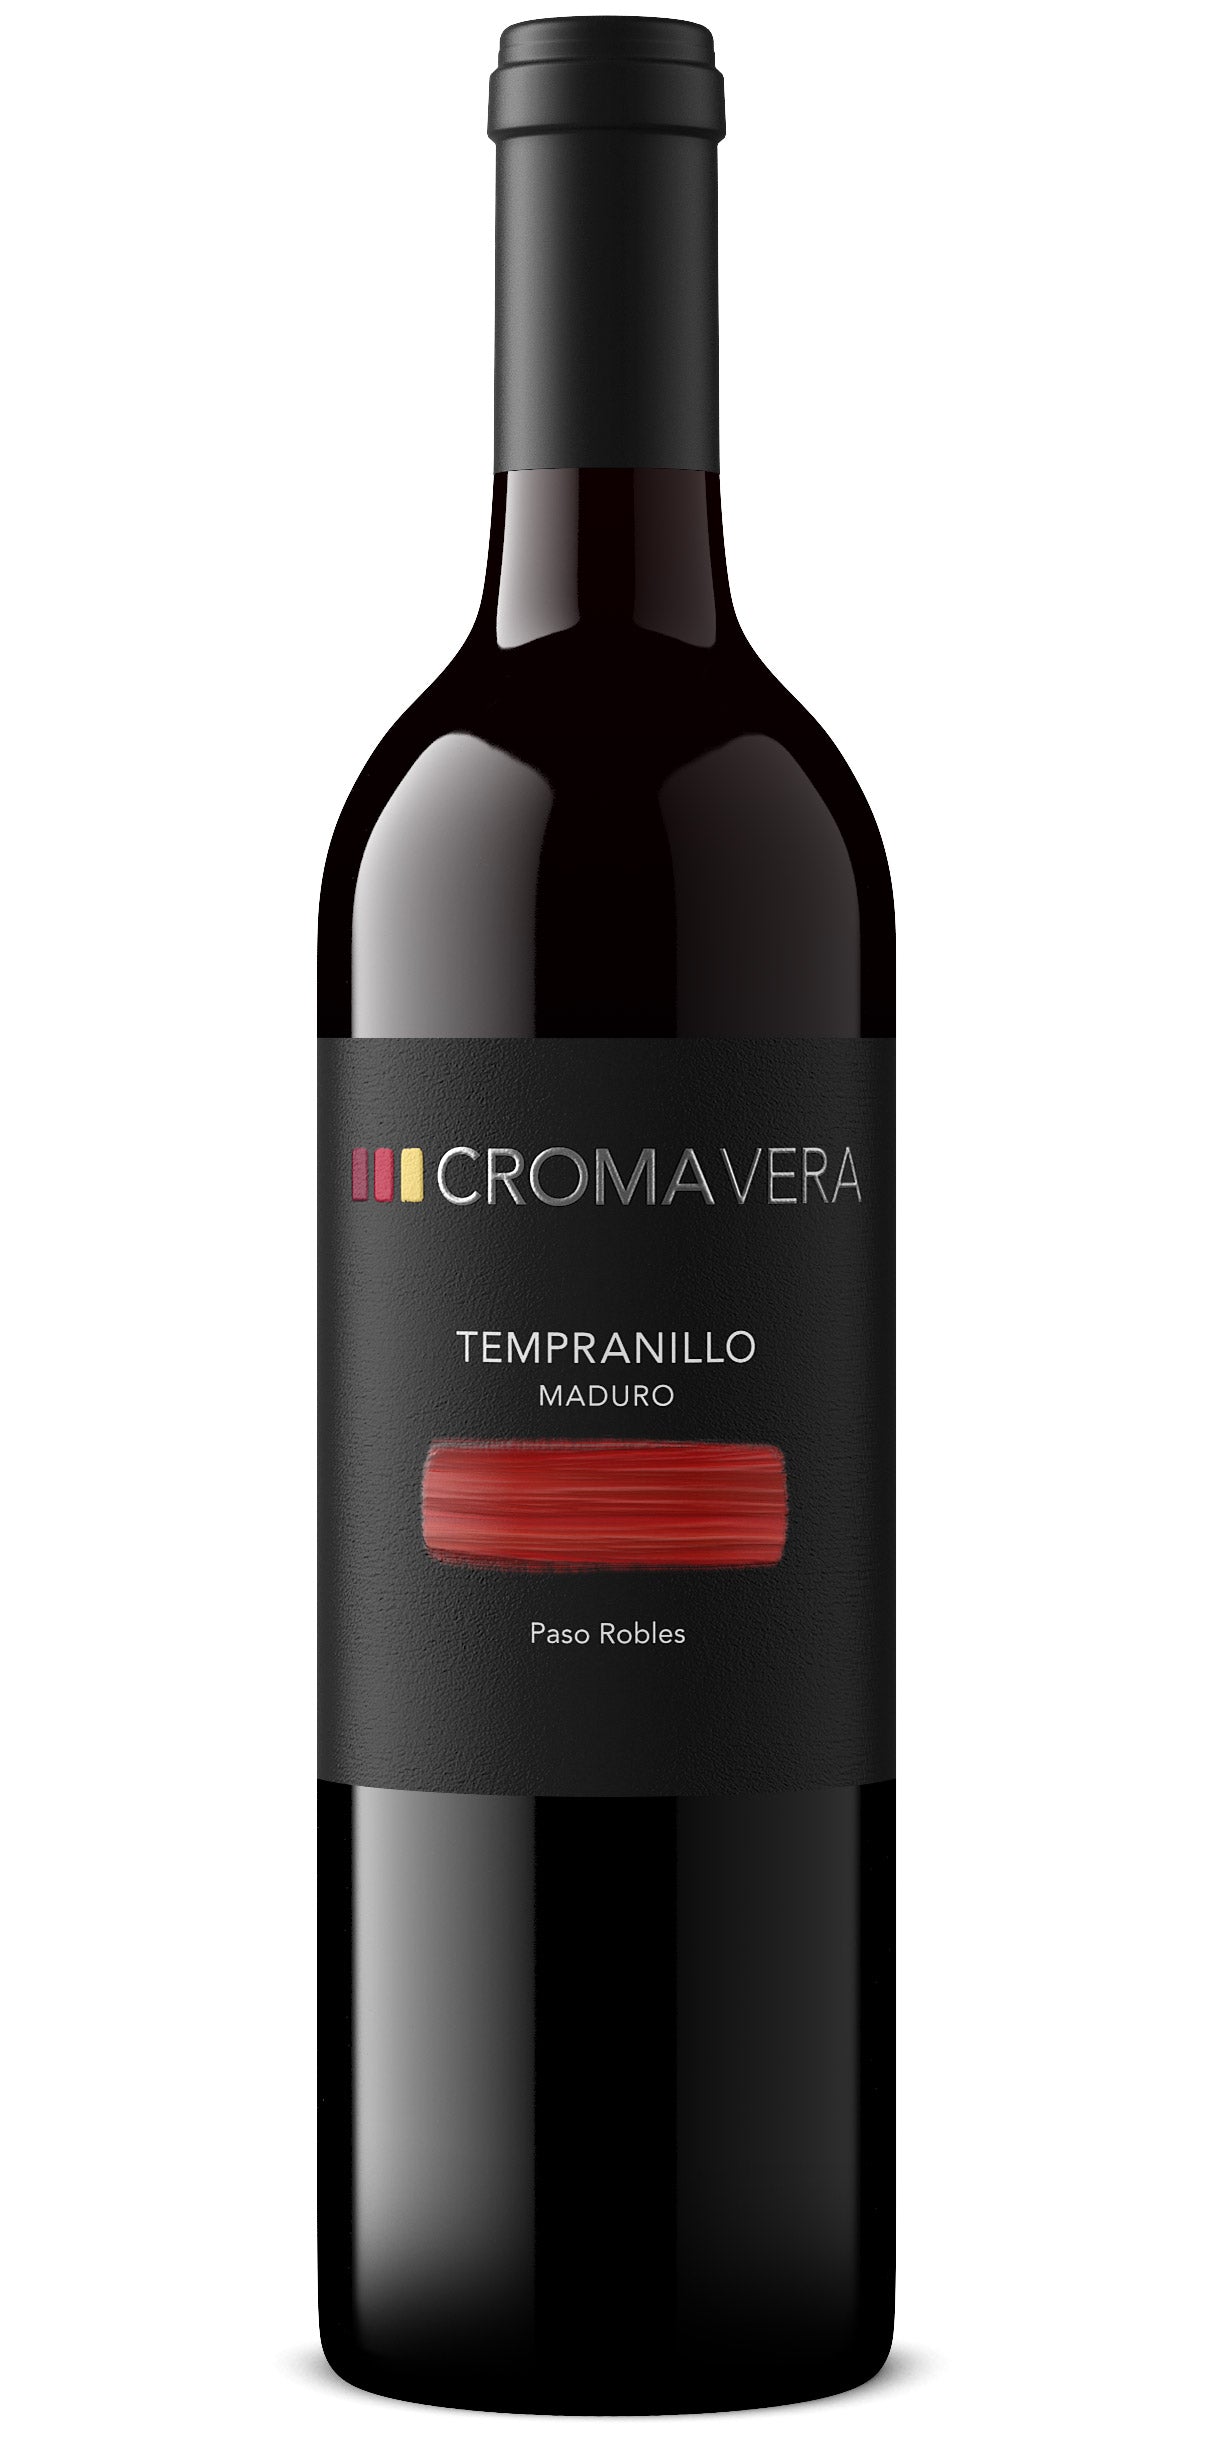 A bottle of Croma Vera Tempranillo Maduro red wine